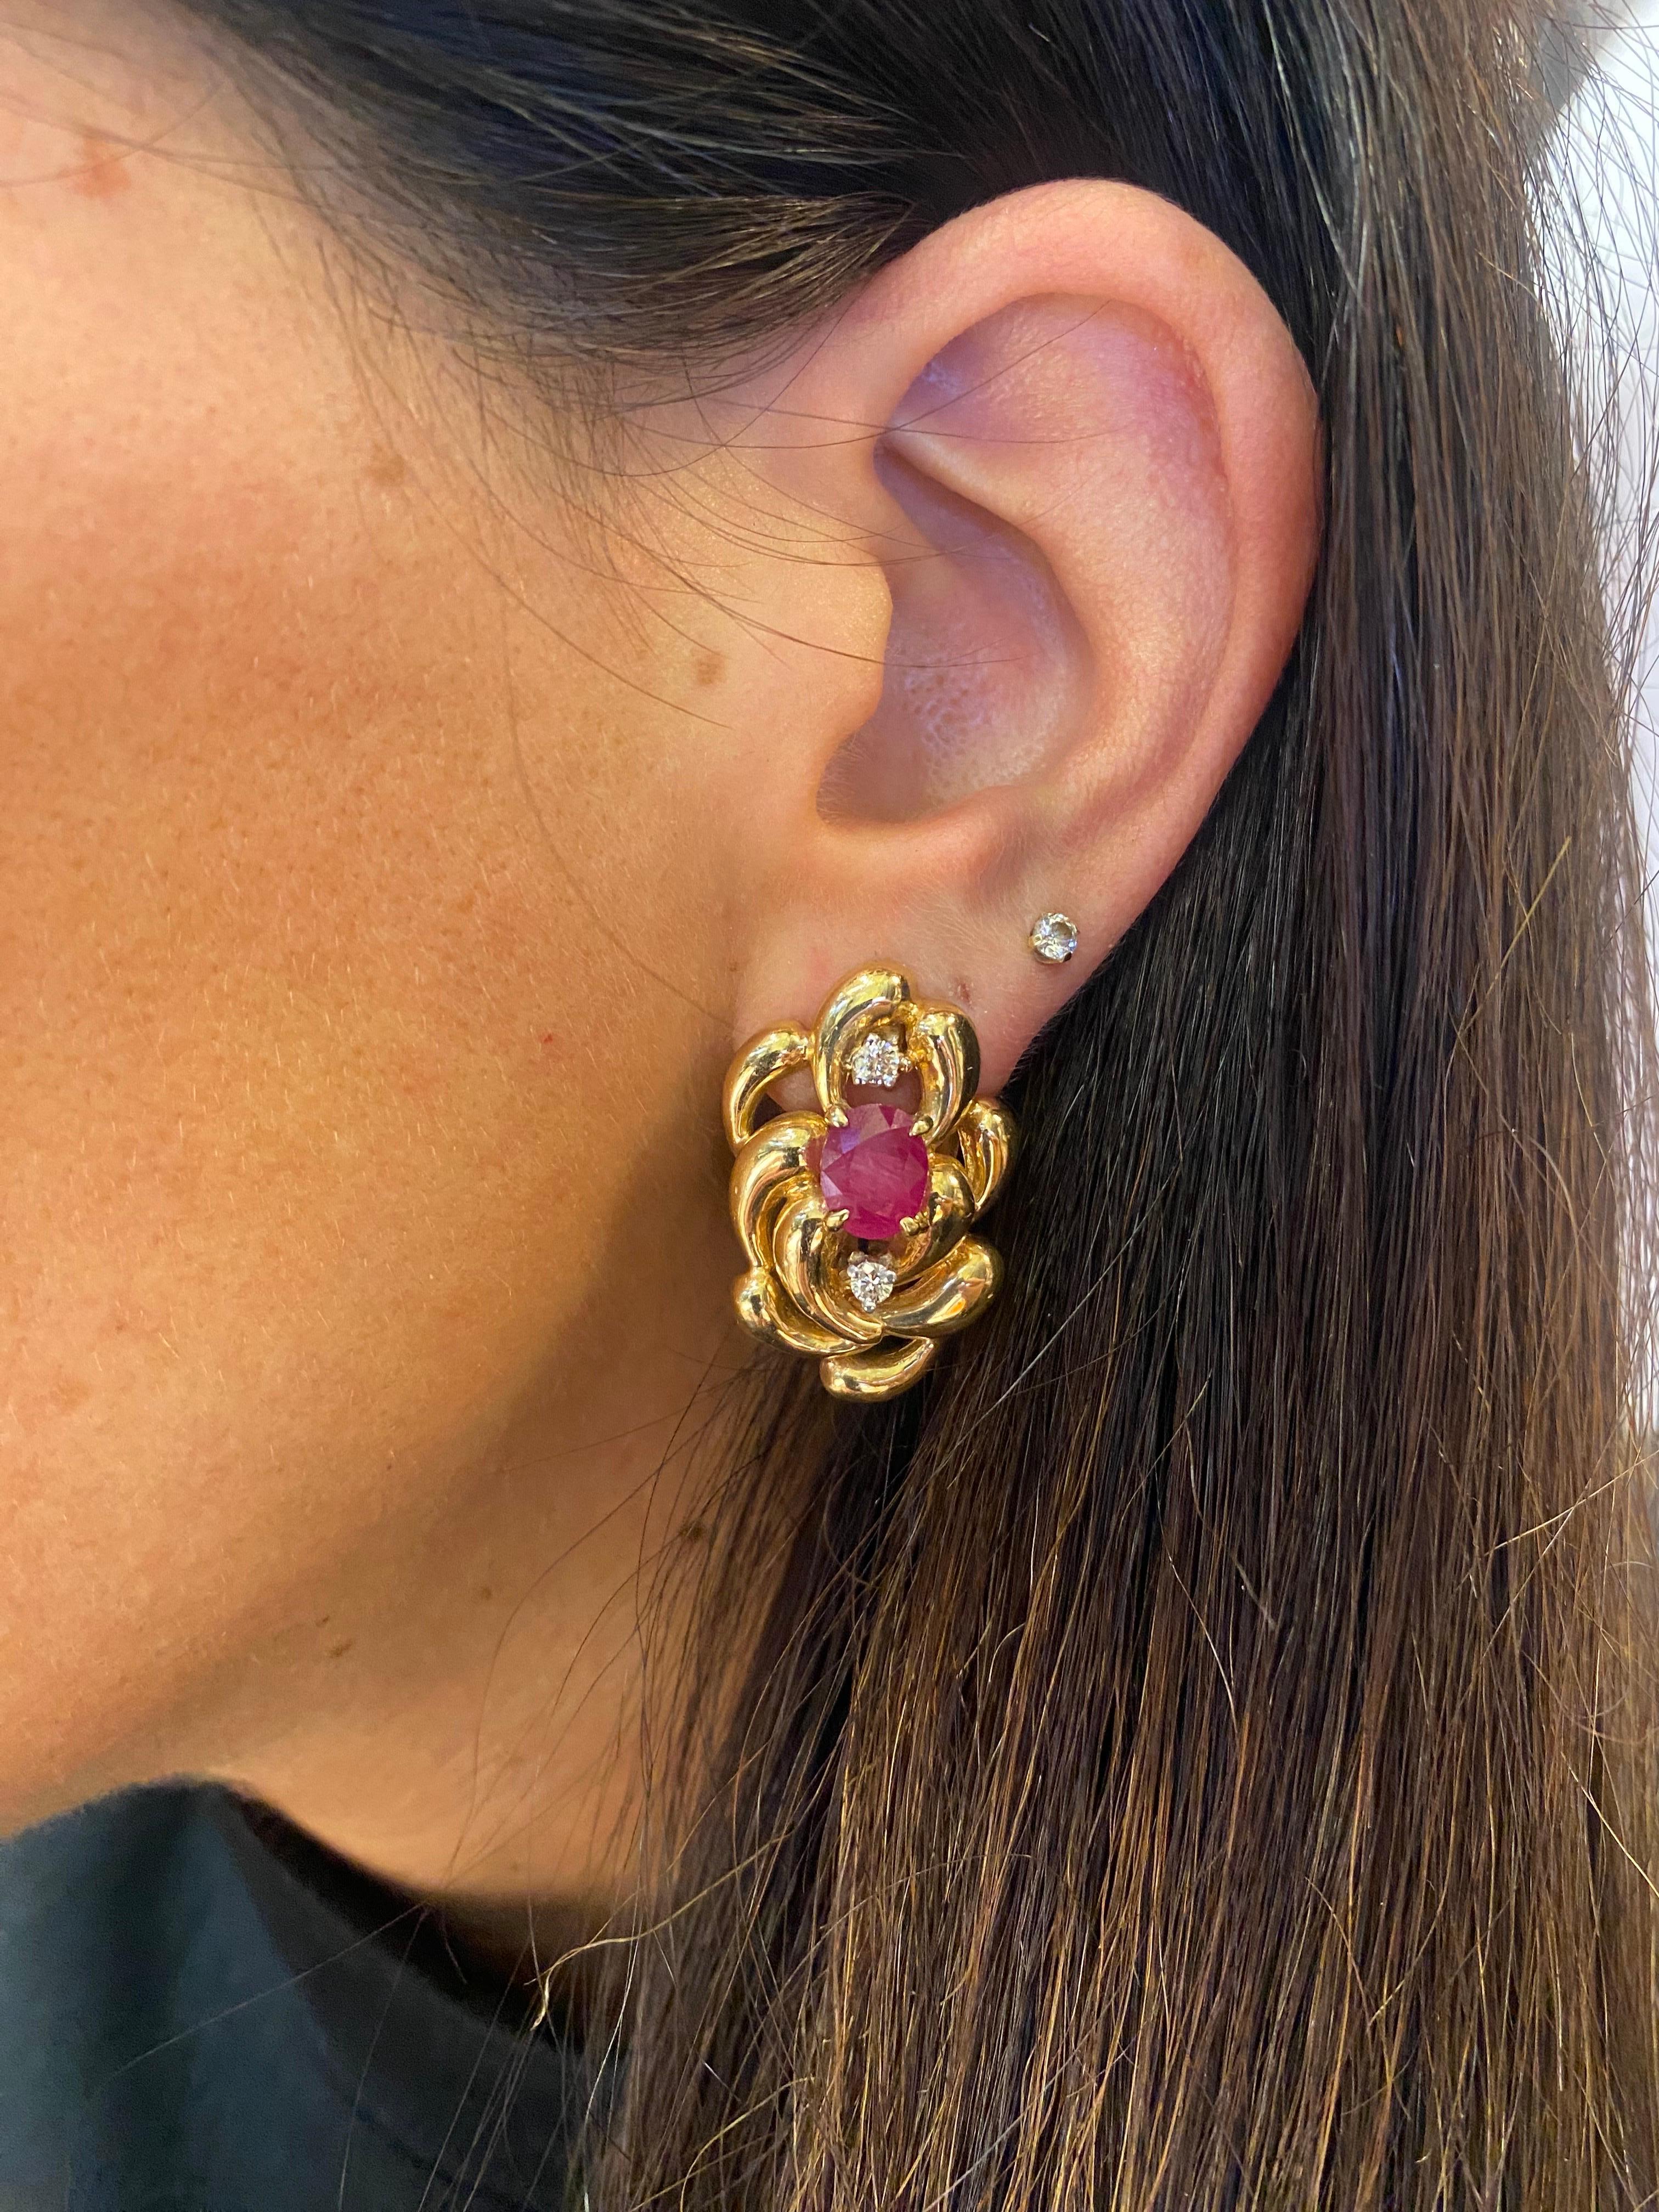 Rubin- und Diamant-Ohrringe

Ein Paar Ohrringe, besetzt mit Rubinen im Ovalschliff und zwei Diamanten im Rundschliff.

Ungefähre kombinierte Gewichte
Rubine: 2 Karat
Diamanten: 0,6 Karat

Misst ungefähr 1